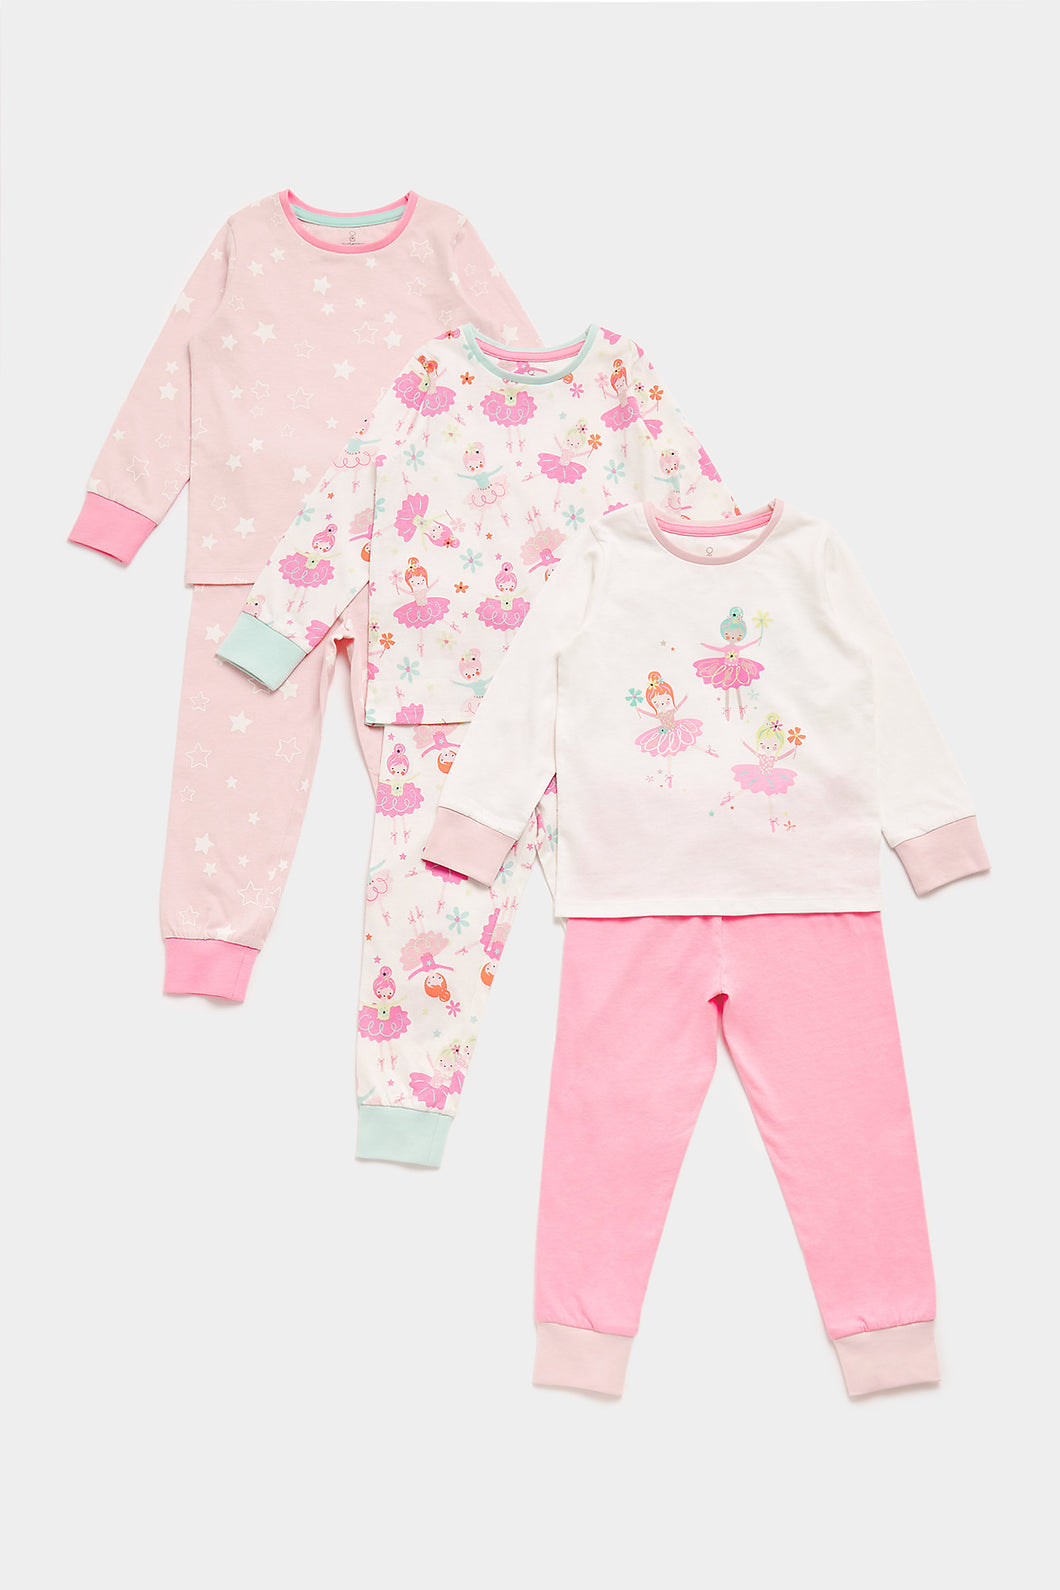 Mothercare Ballerina Pyjamas - 3 Pack